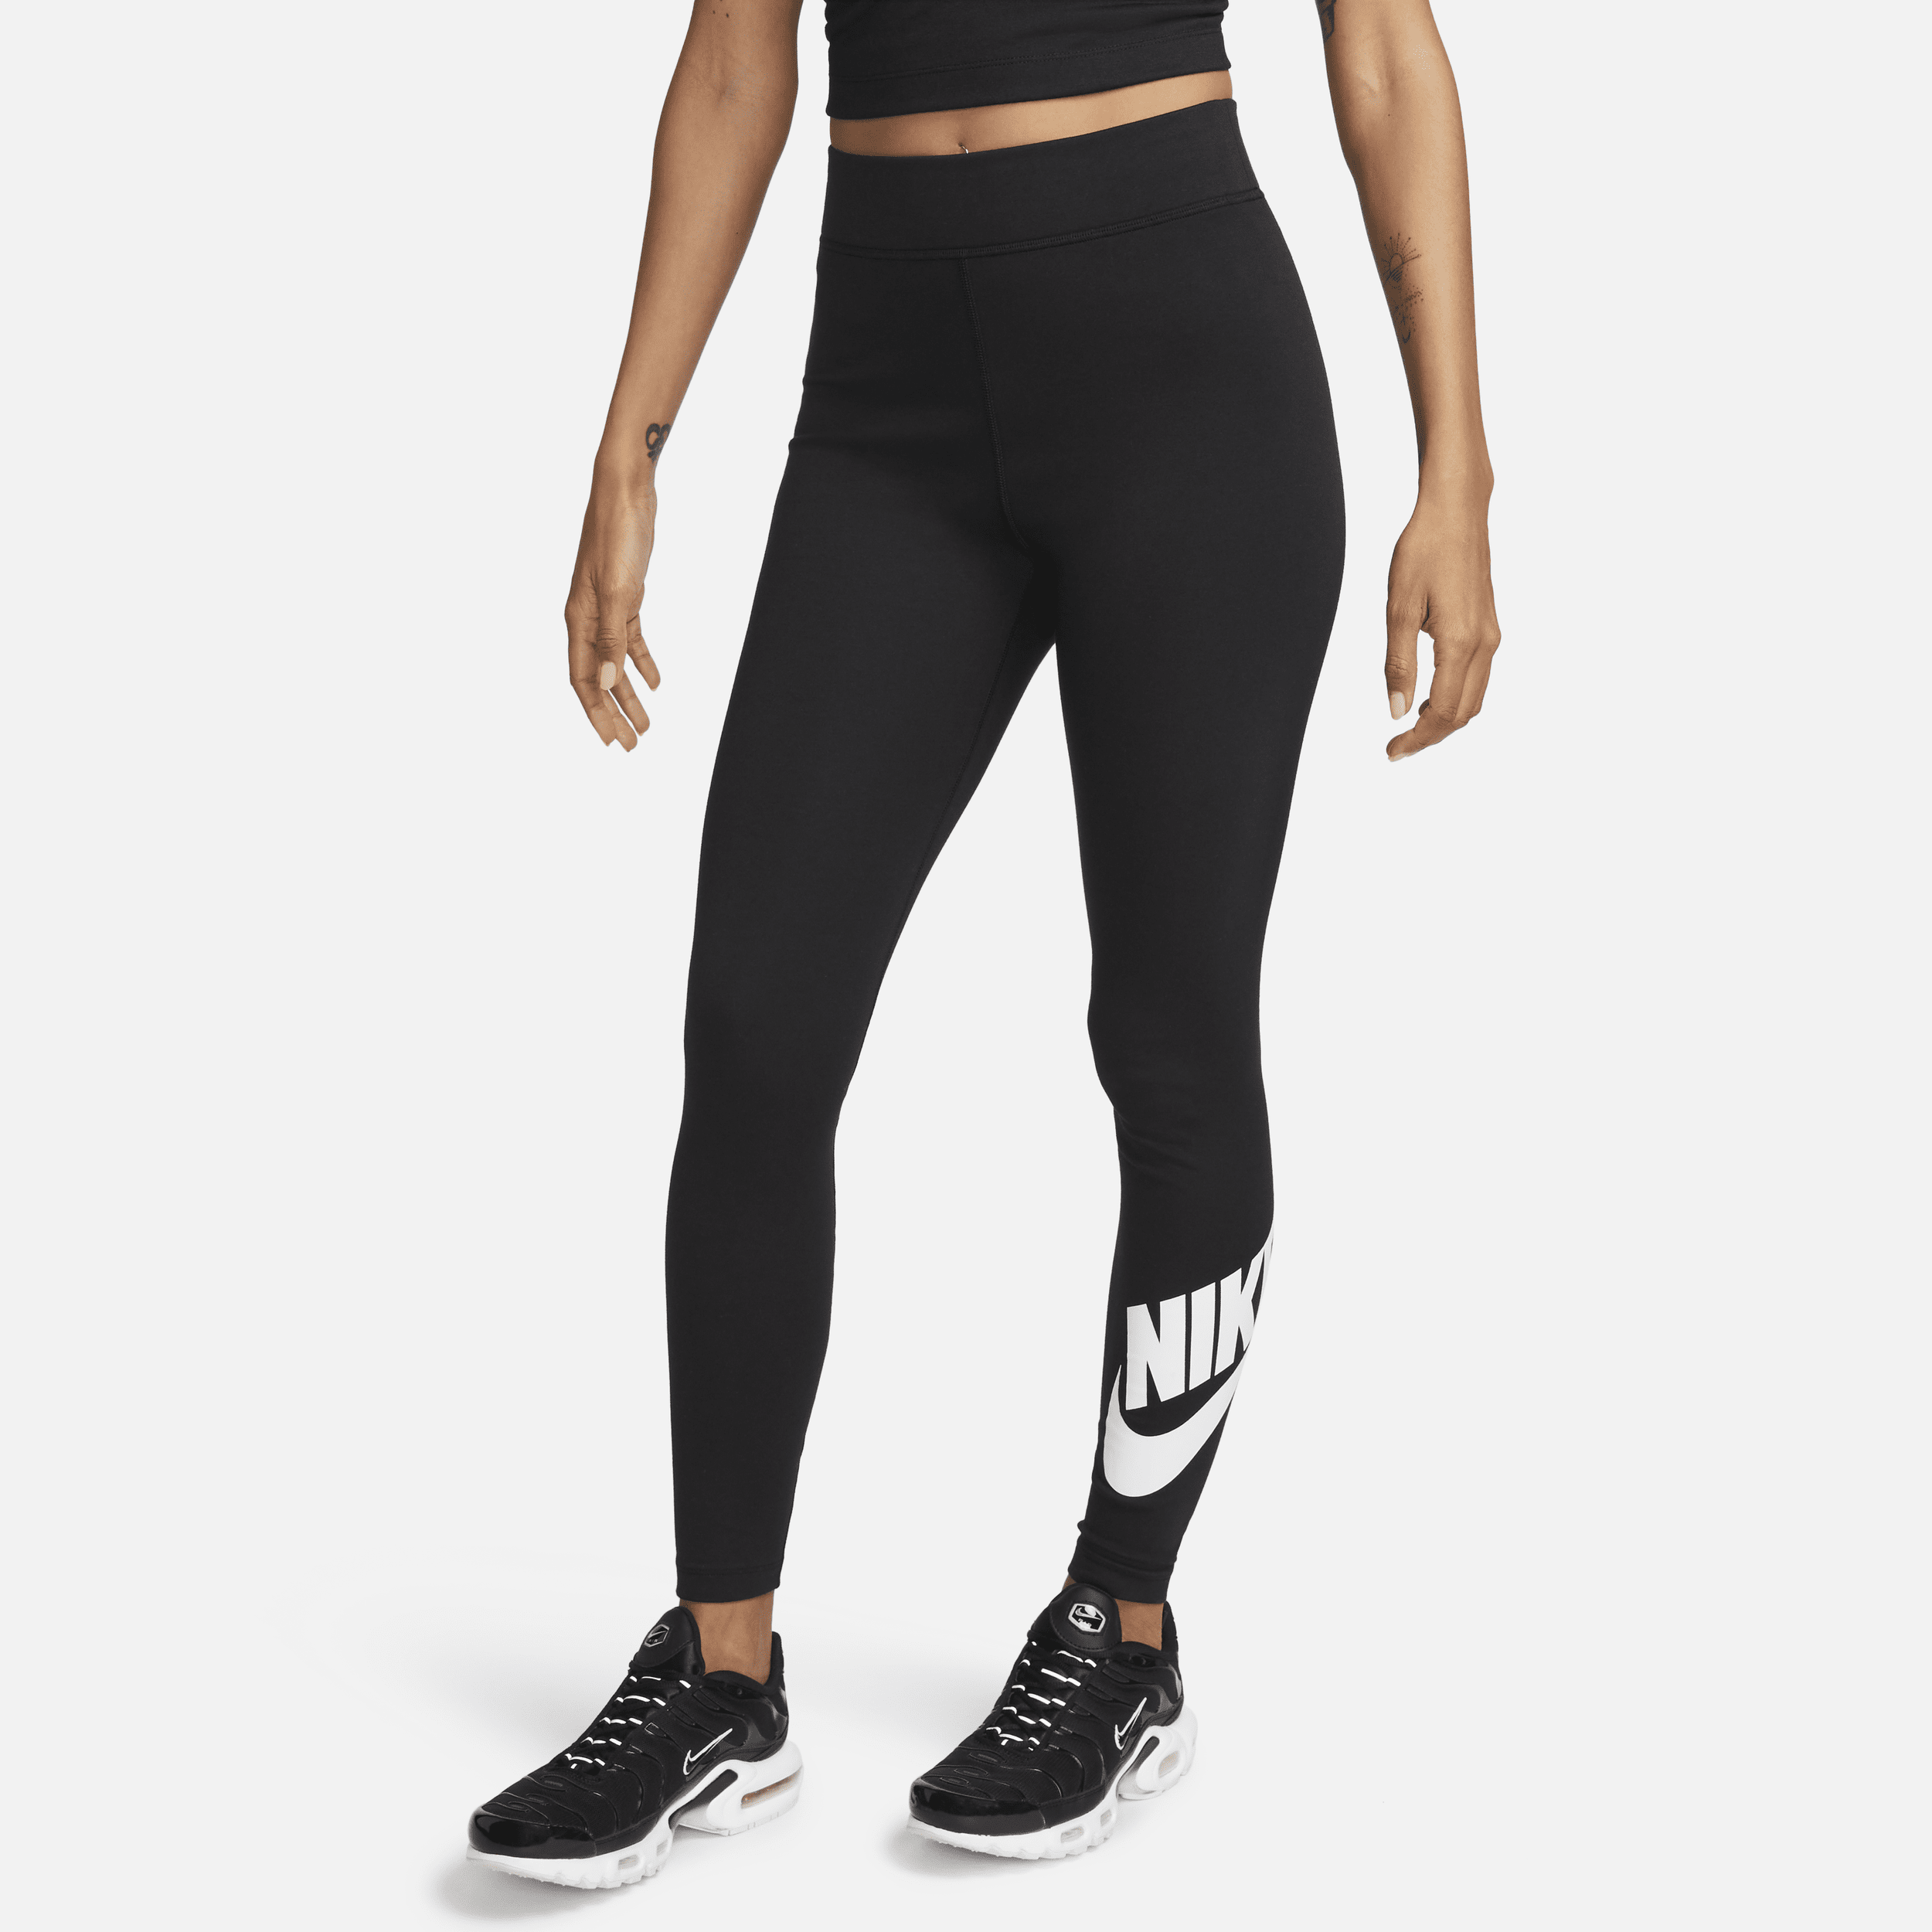 Leggings a vita alta con grafica Nike Sportswear Classics – Donna - Nero